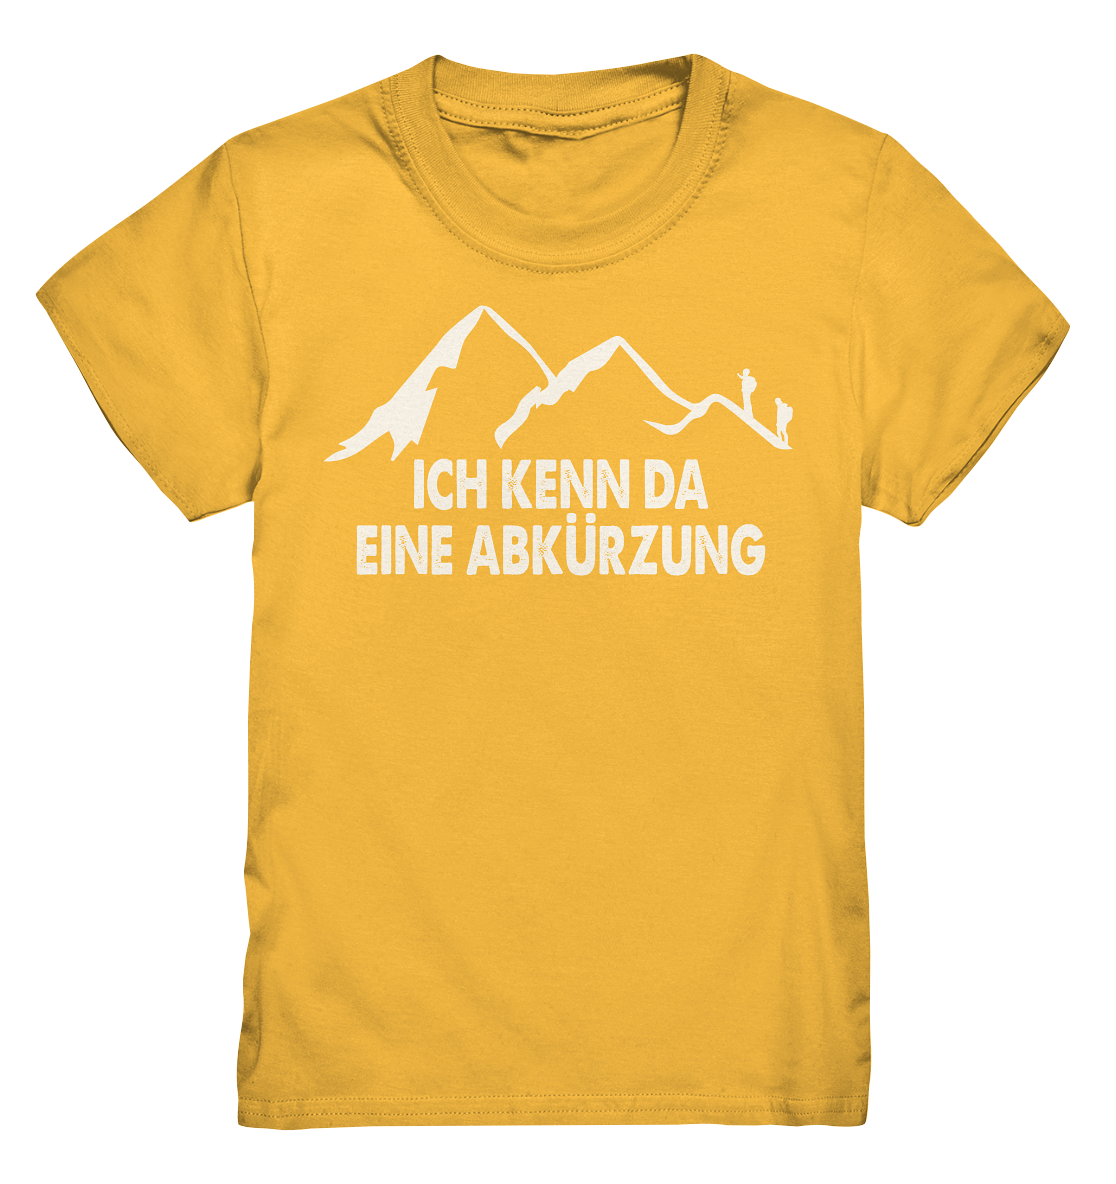 ICH KENN DA EINE ABKÜRZUNG Shirt (w) - Kids Premium Shirt